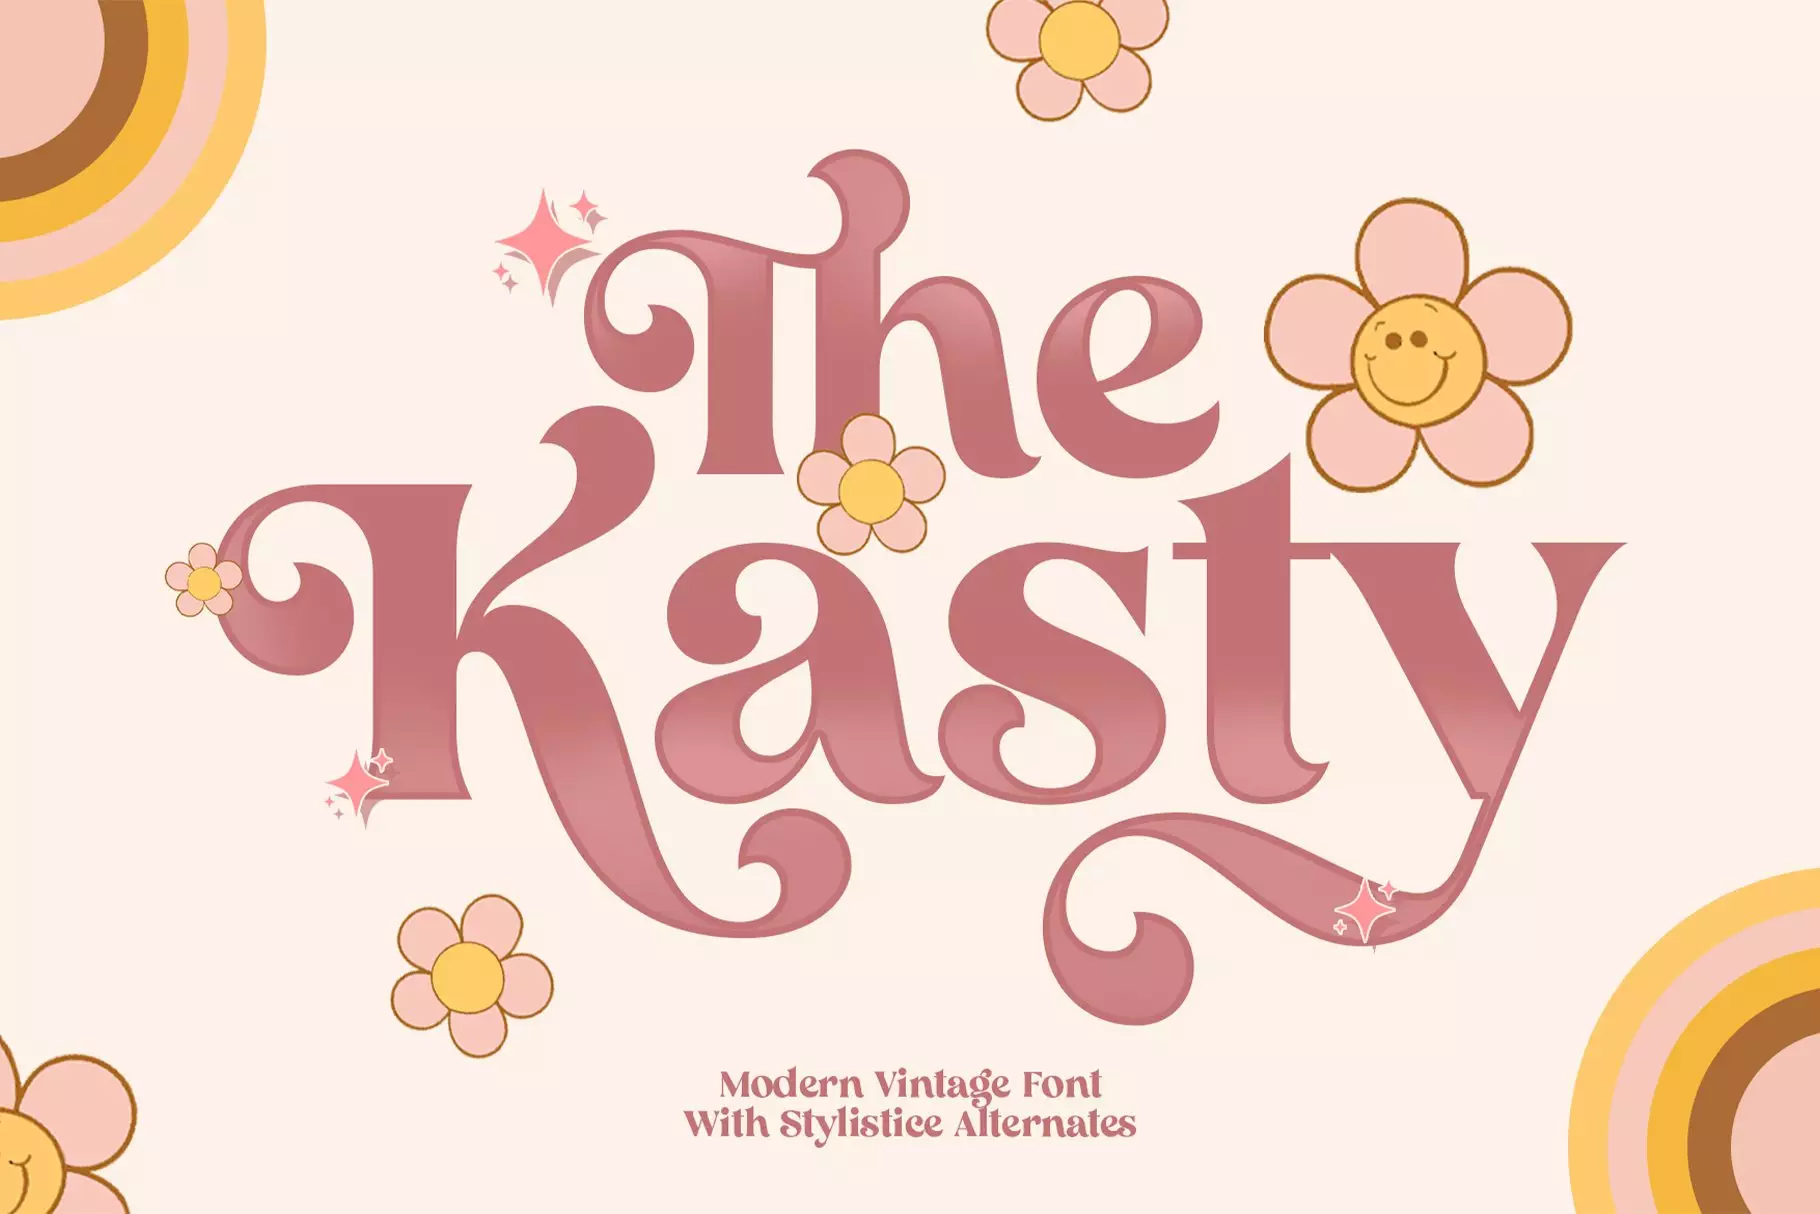 The Kasty Vintage Font